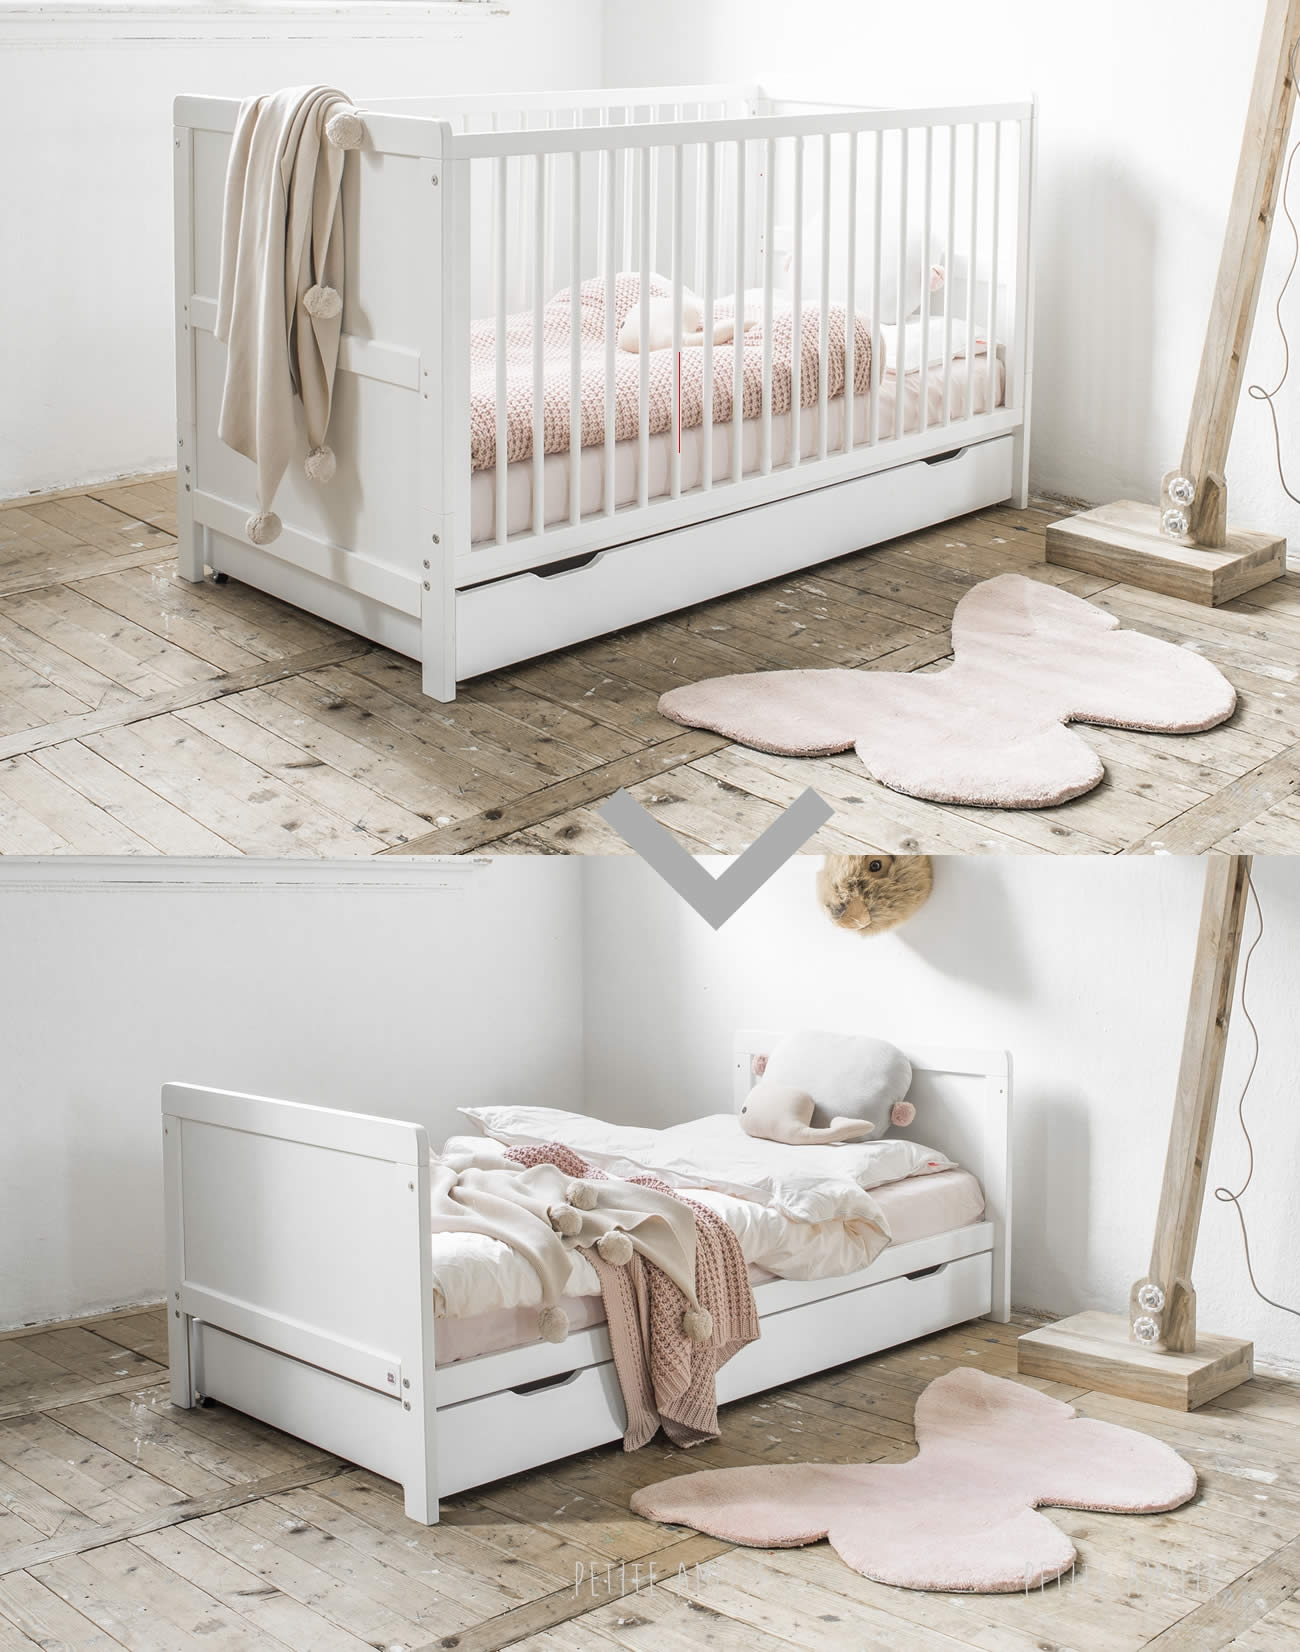 Choisir un lit bébé - Galerie photos d'article (7/13)